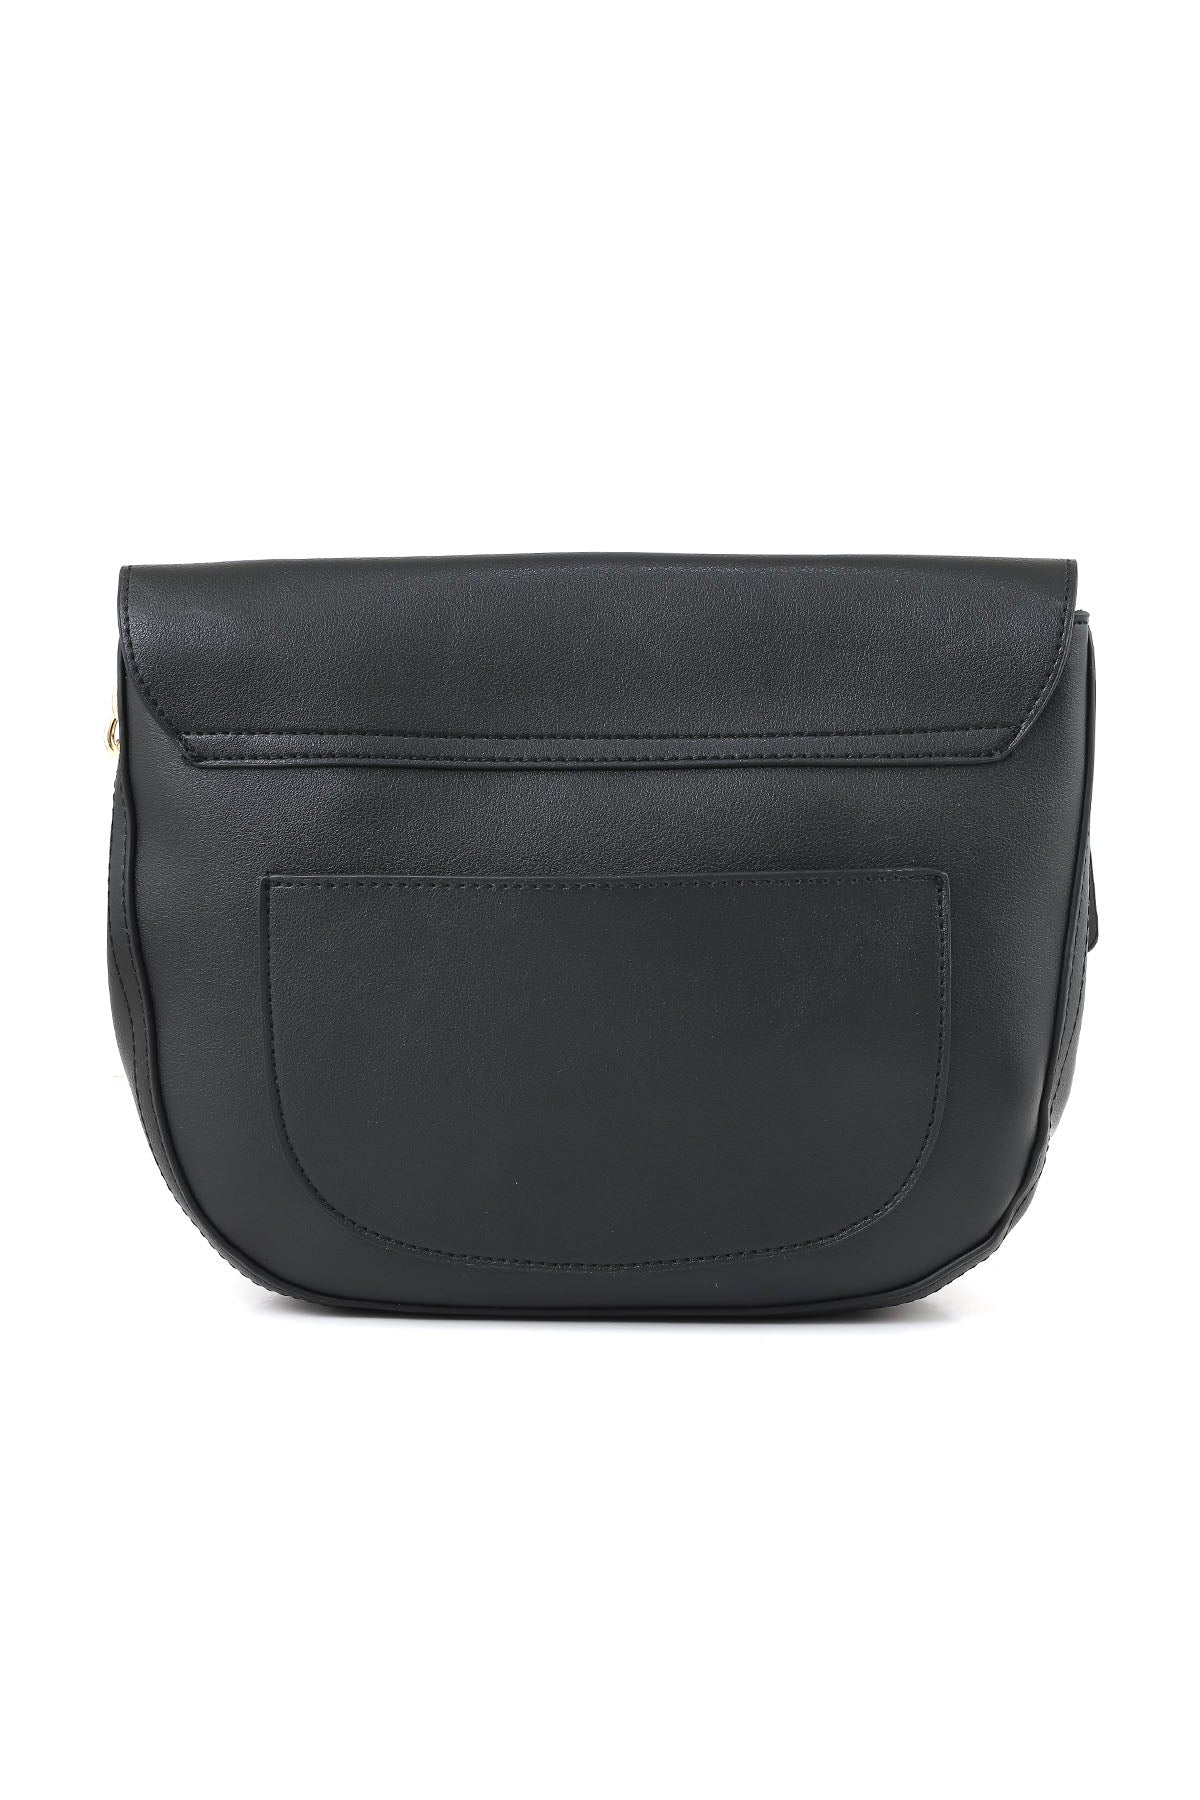 Cross Shoulder Bags B15065-Black